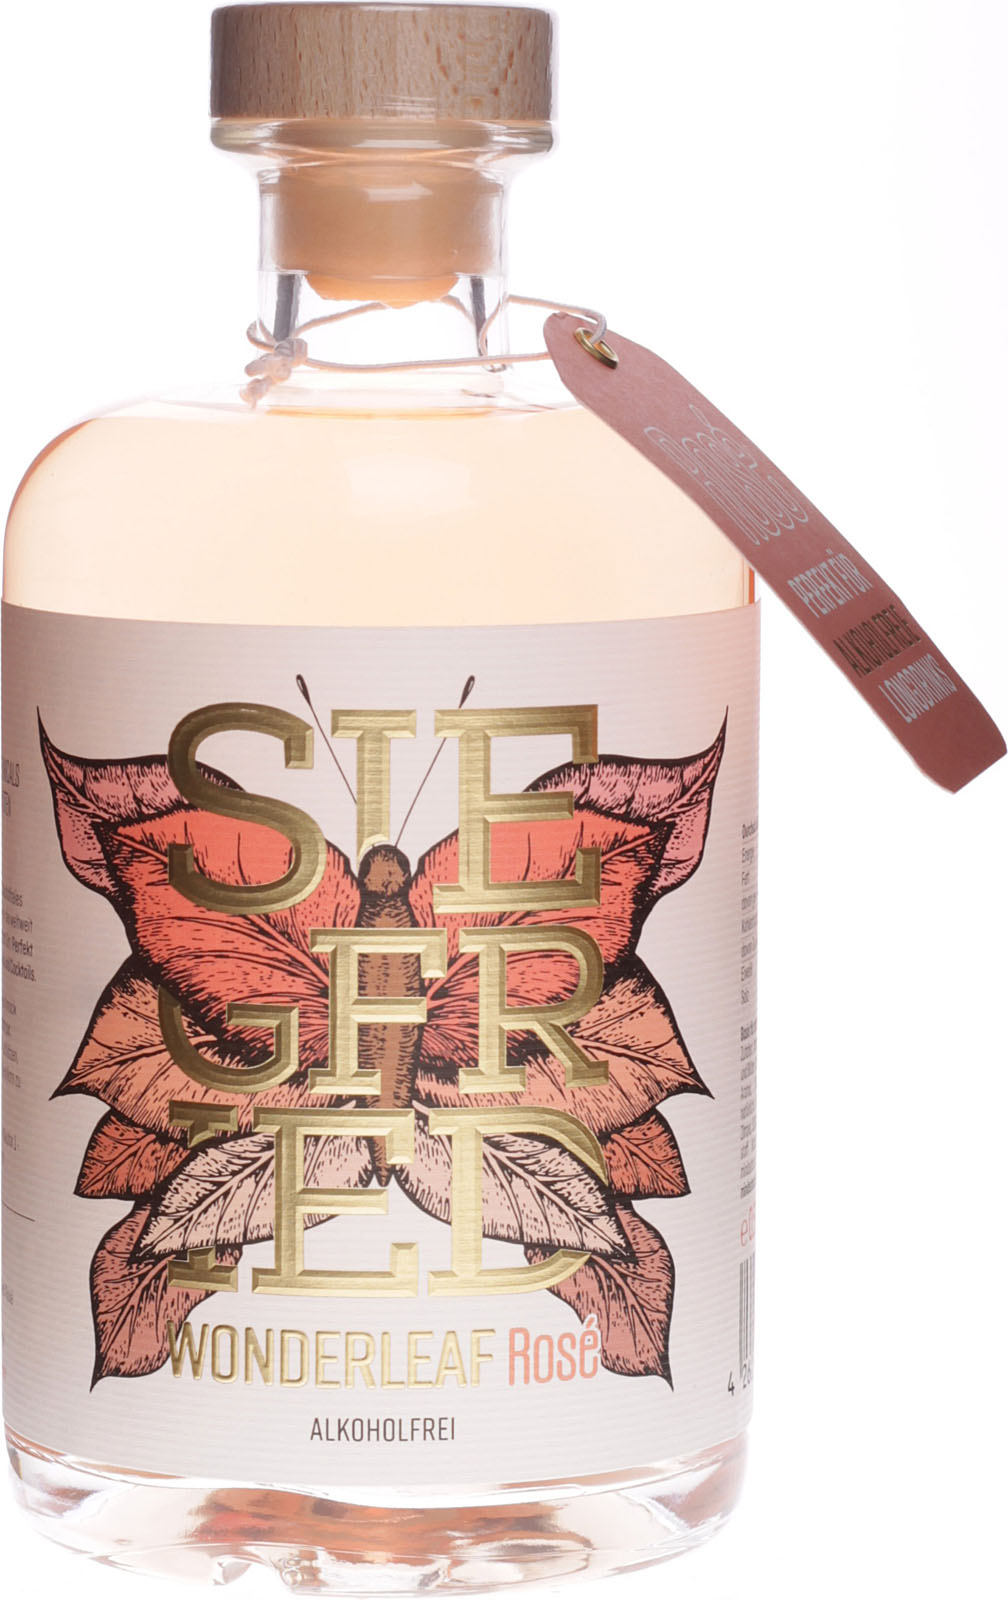 Siegfried Wonderleaf Rose alkoholfrei im 0,5 Shop Liter